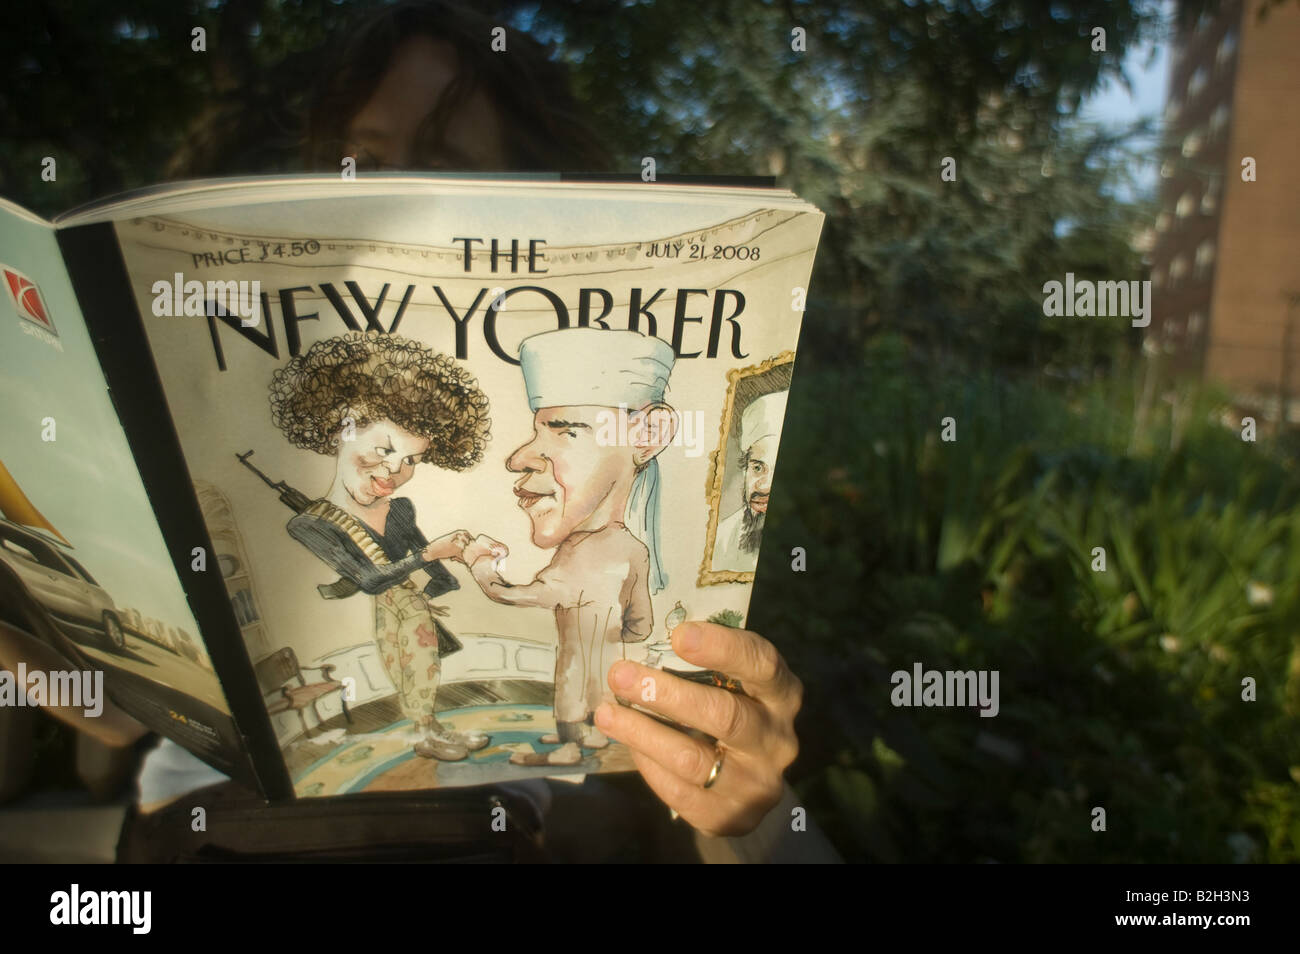 Eine Frau liest The New Yorker Magazine mit einer Abbildung auf dem Cover des Presidential hoffnungsvollen Barack Obama und Michelle Obama Stockfoto